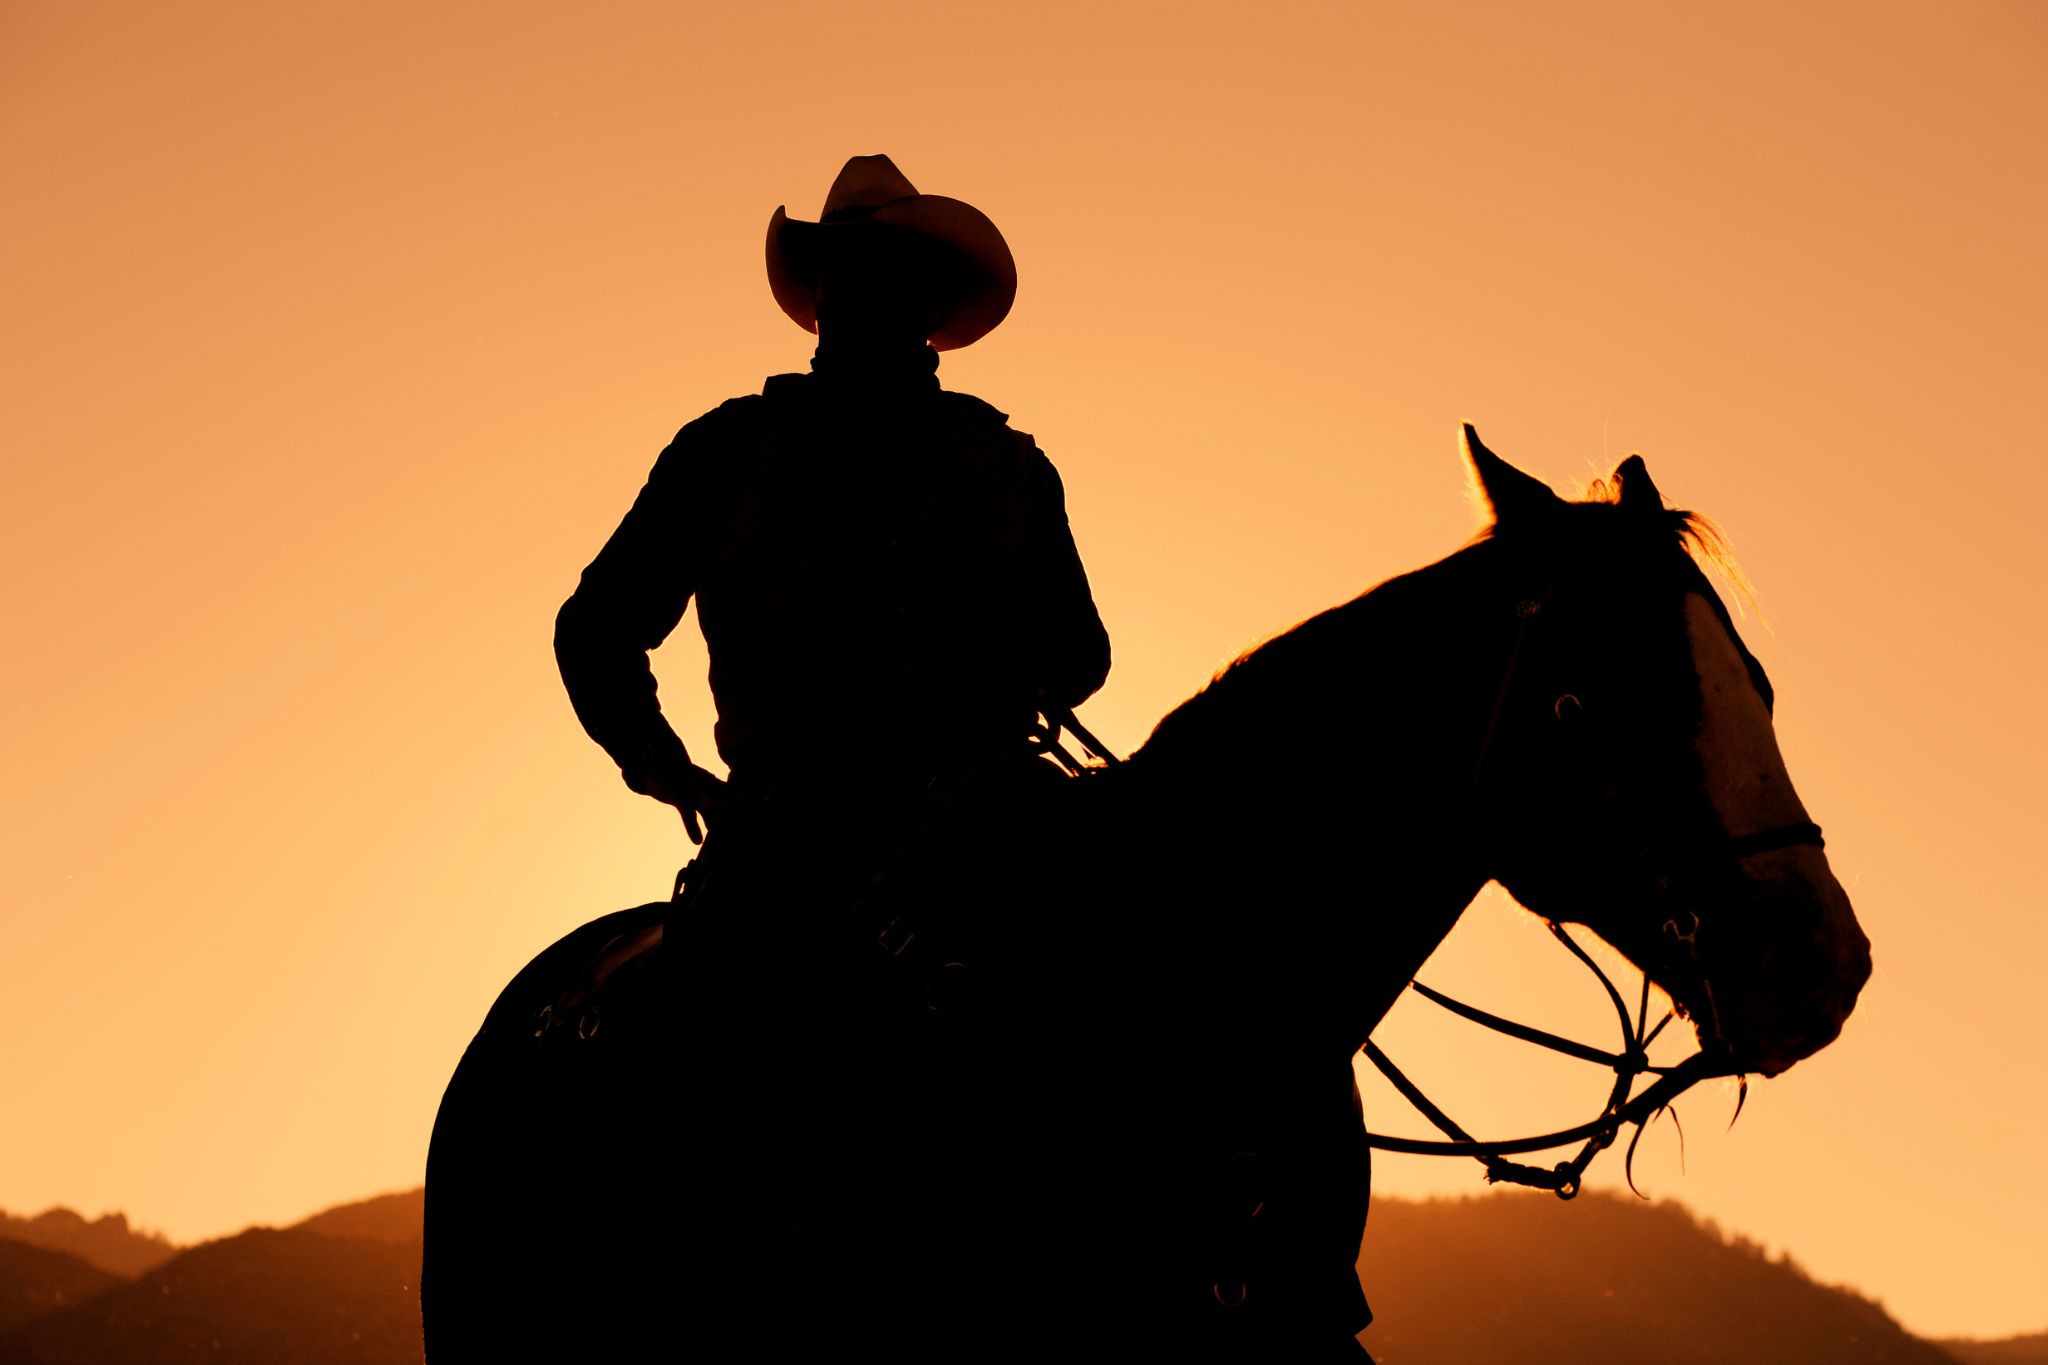 Ковбой егэ. Парень шляпе на коне. Ковбой на закате картинки. Человек с винтовкой в руке на лошади.